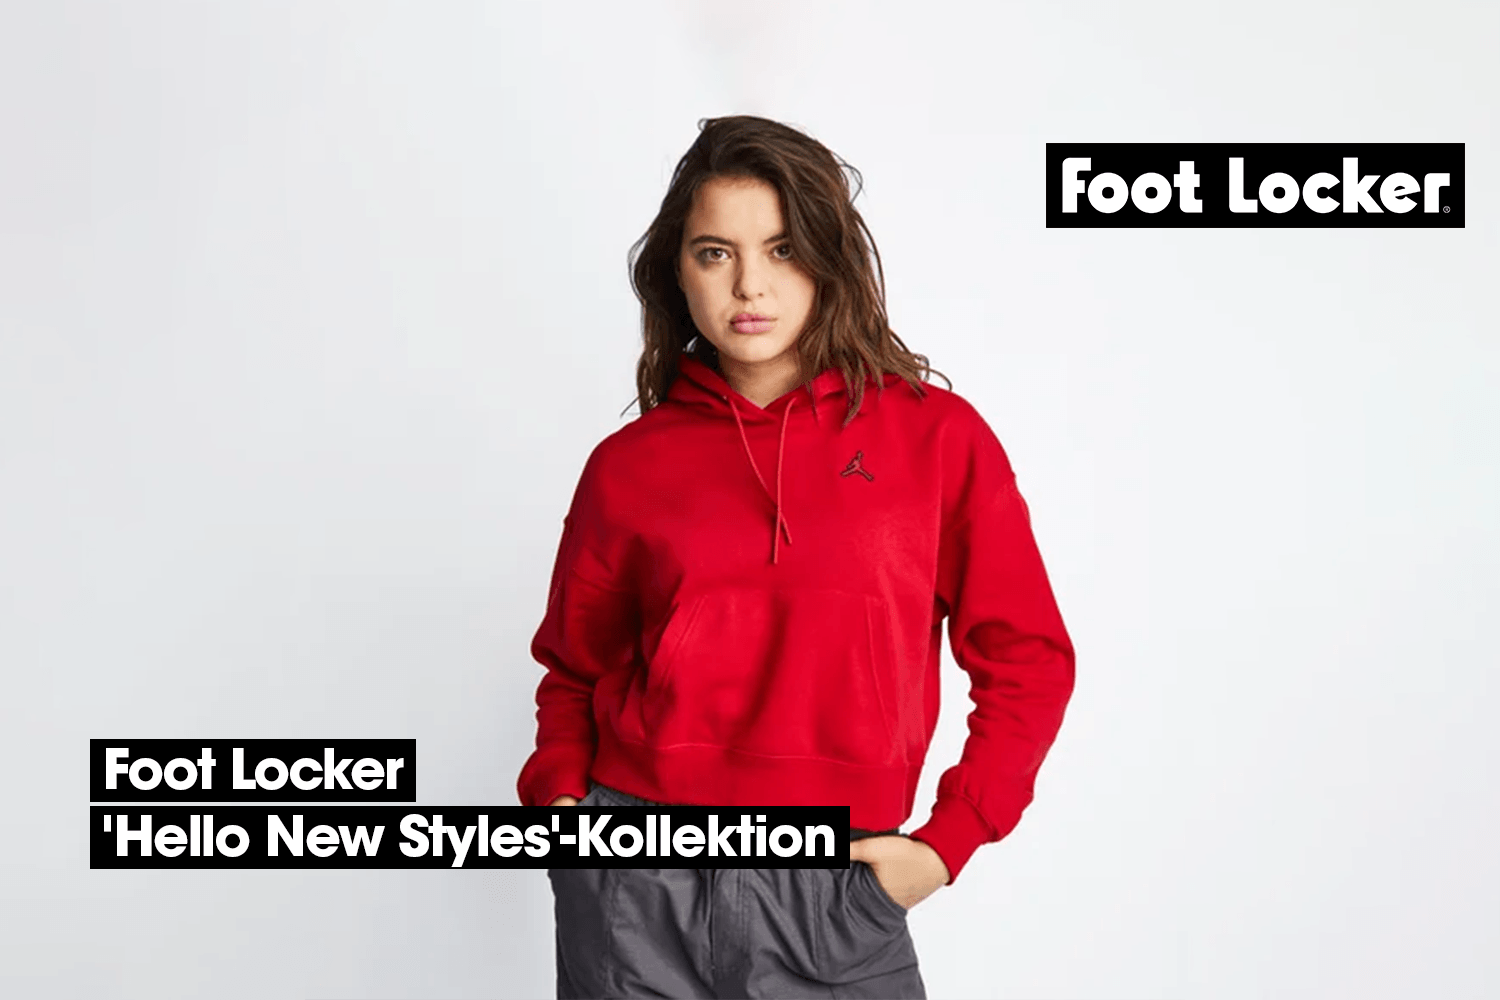 Die 'Hello New Styles'-Kollektion von Foot Locker